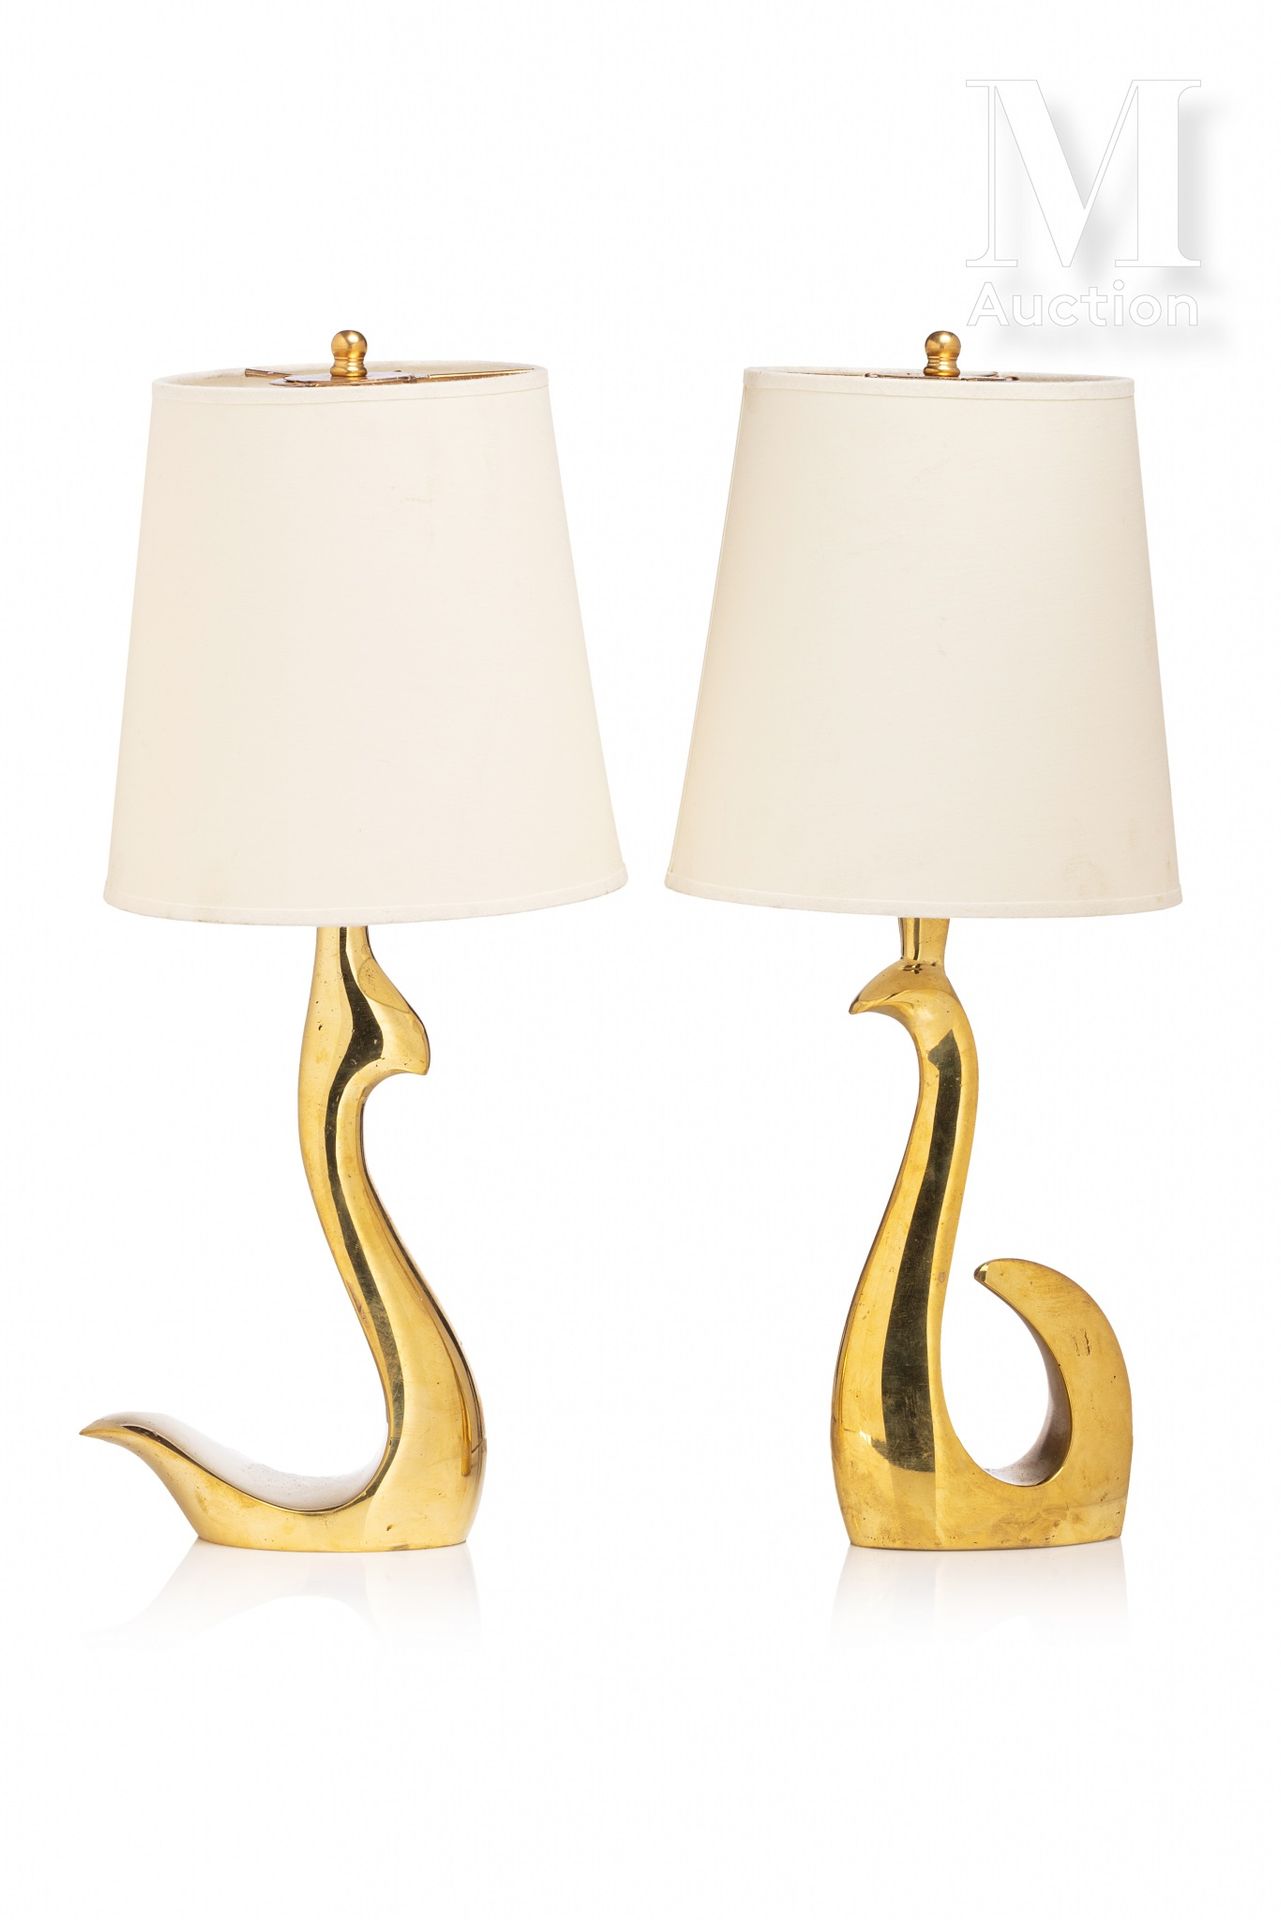 RICCARDO SCARPA (1905-1999) Suite de deux lampes de forme libre en bronze doré.
&hellip;